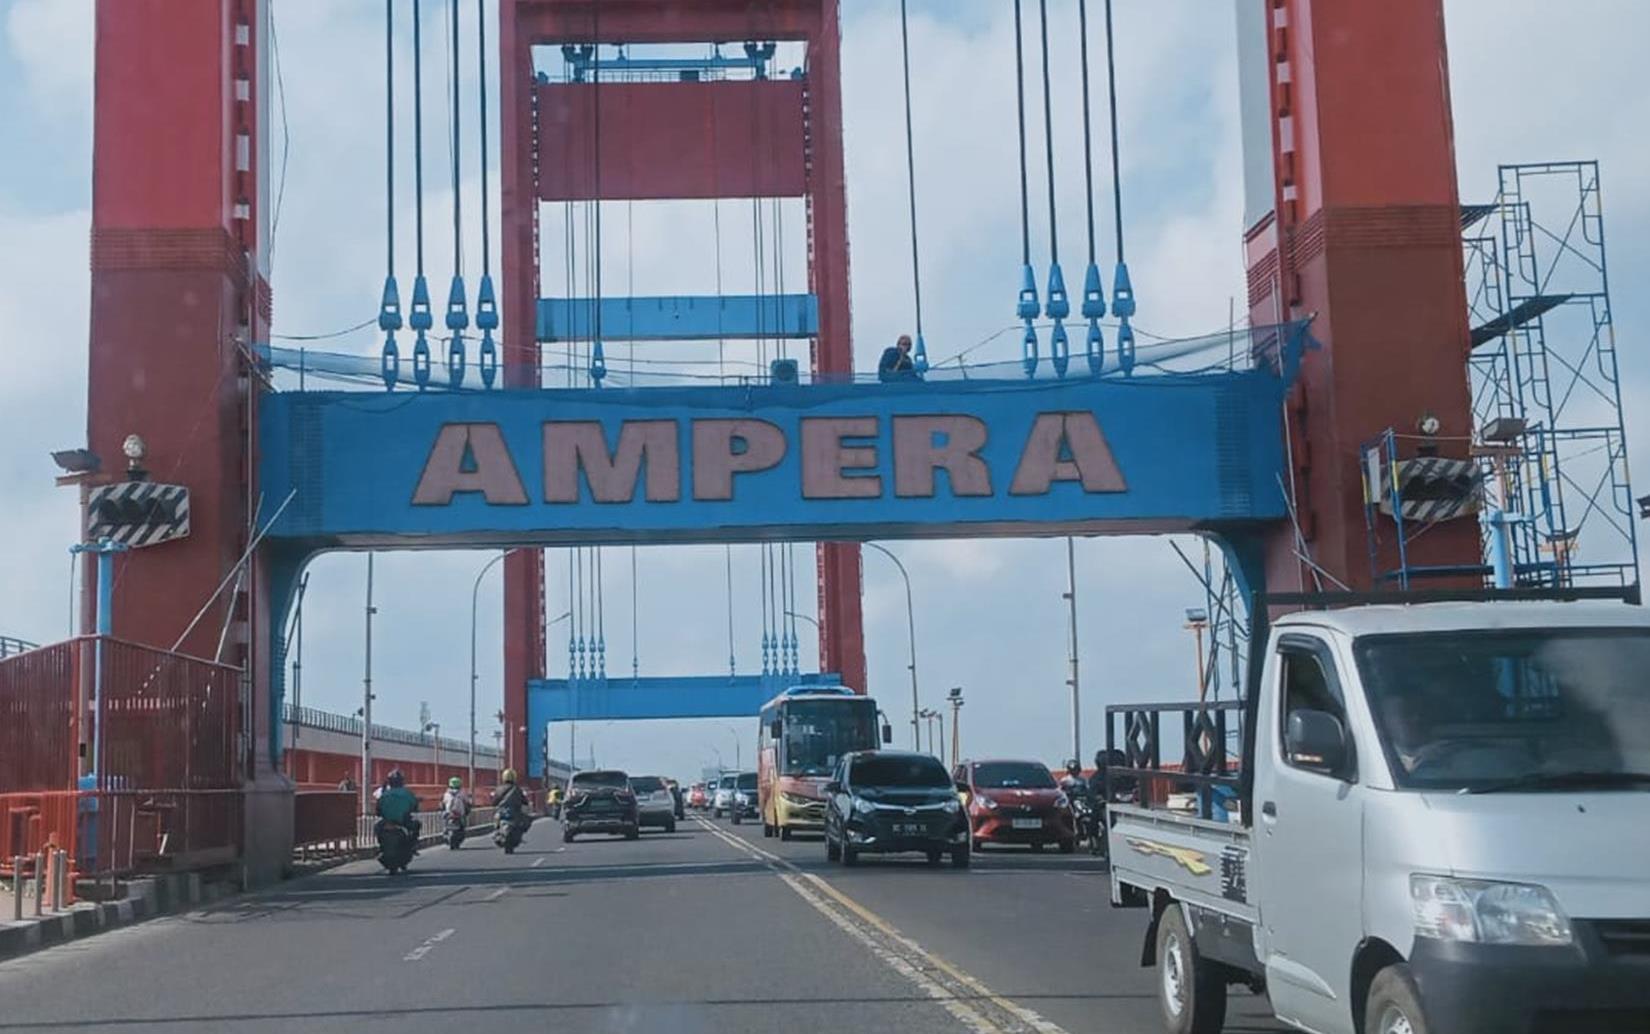 Jembatan Ampera Bersolek, Berikut 9 Fakta Destinasi Wisata Super Andalan di Sumsel yang Jarang Diketahui